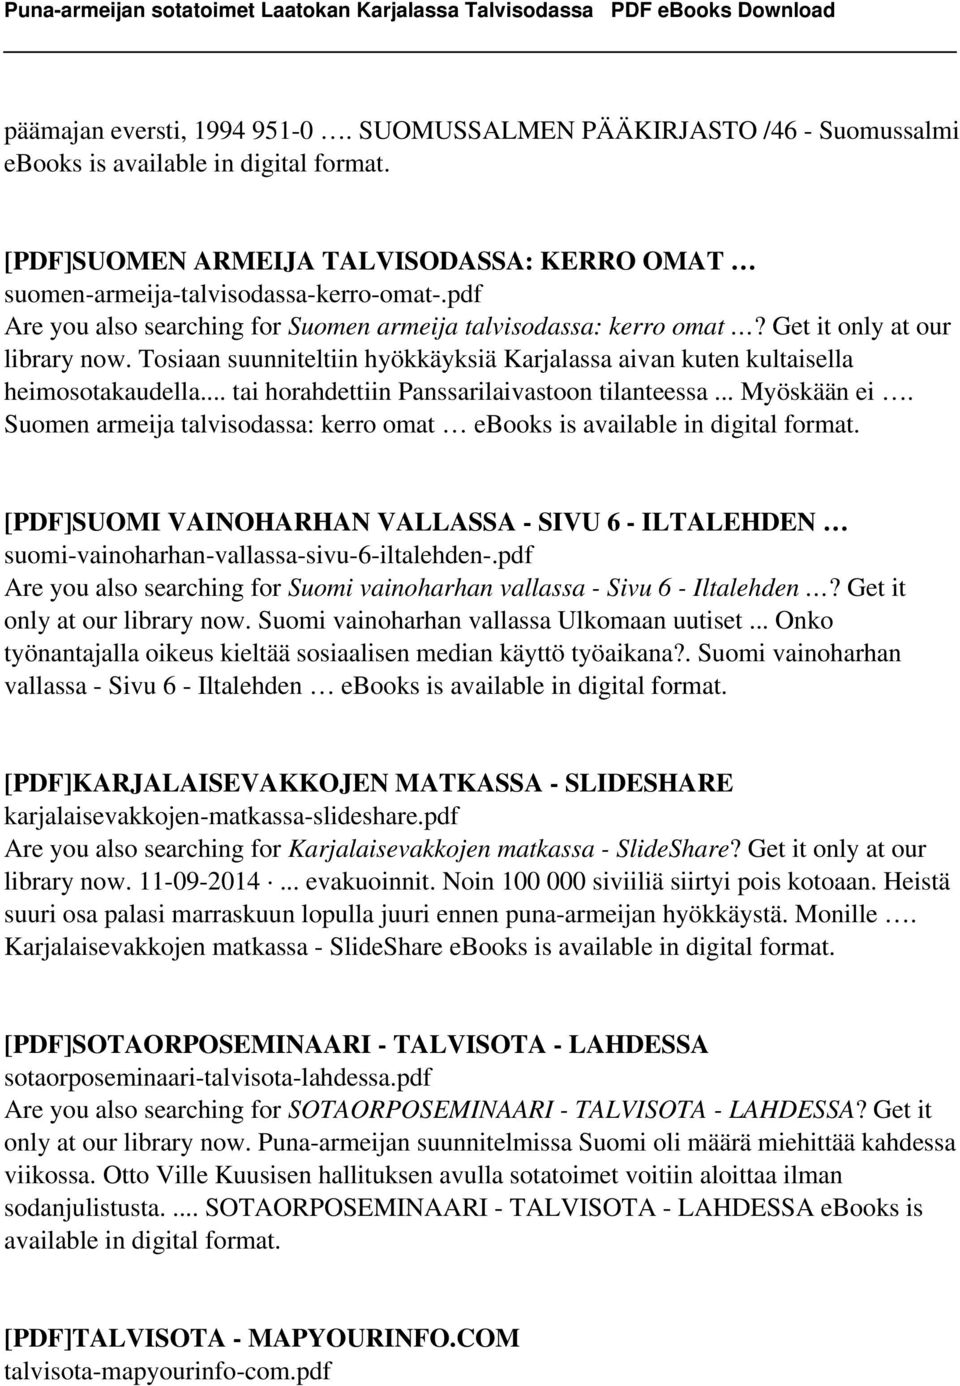 .. tai horahdettiin Panssarilaivastoon tilanteessa... Myöskään ei. Suomen armeija talvisodassa: kerro omat ebooks is available in digital format.